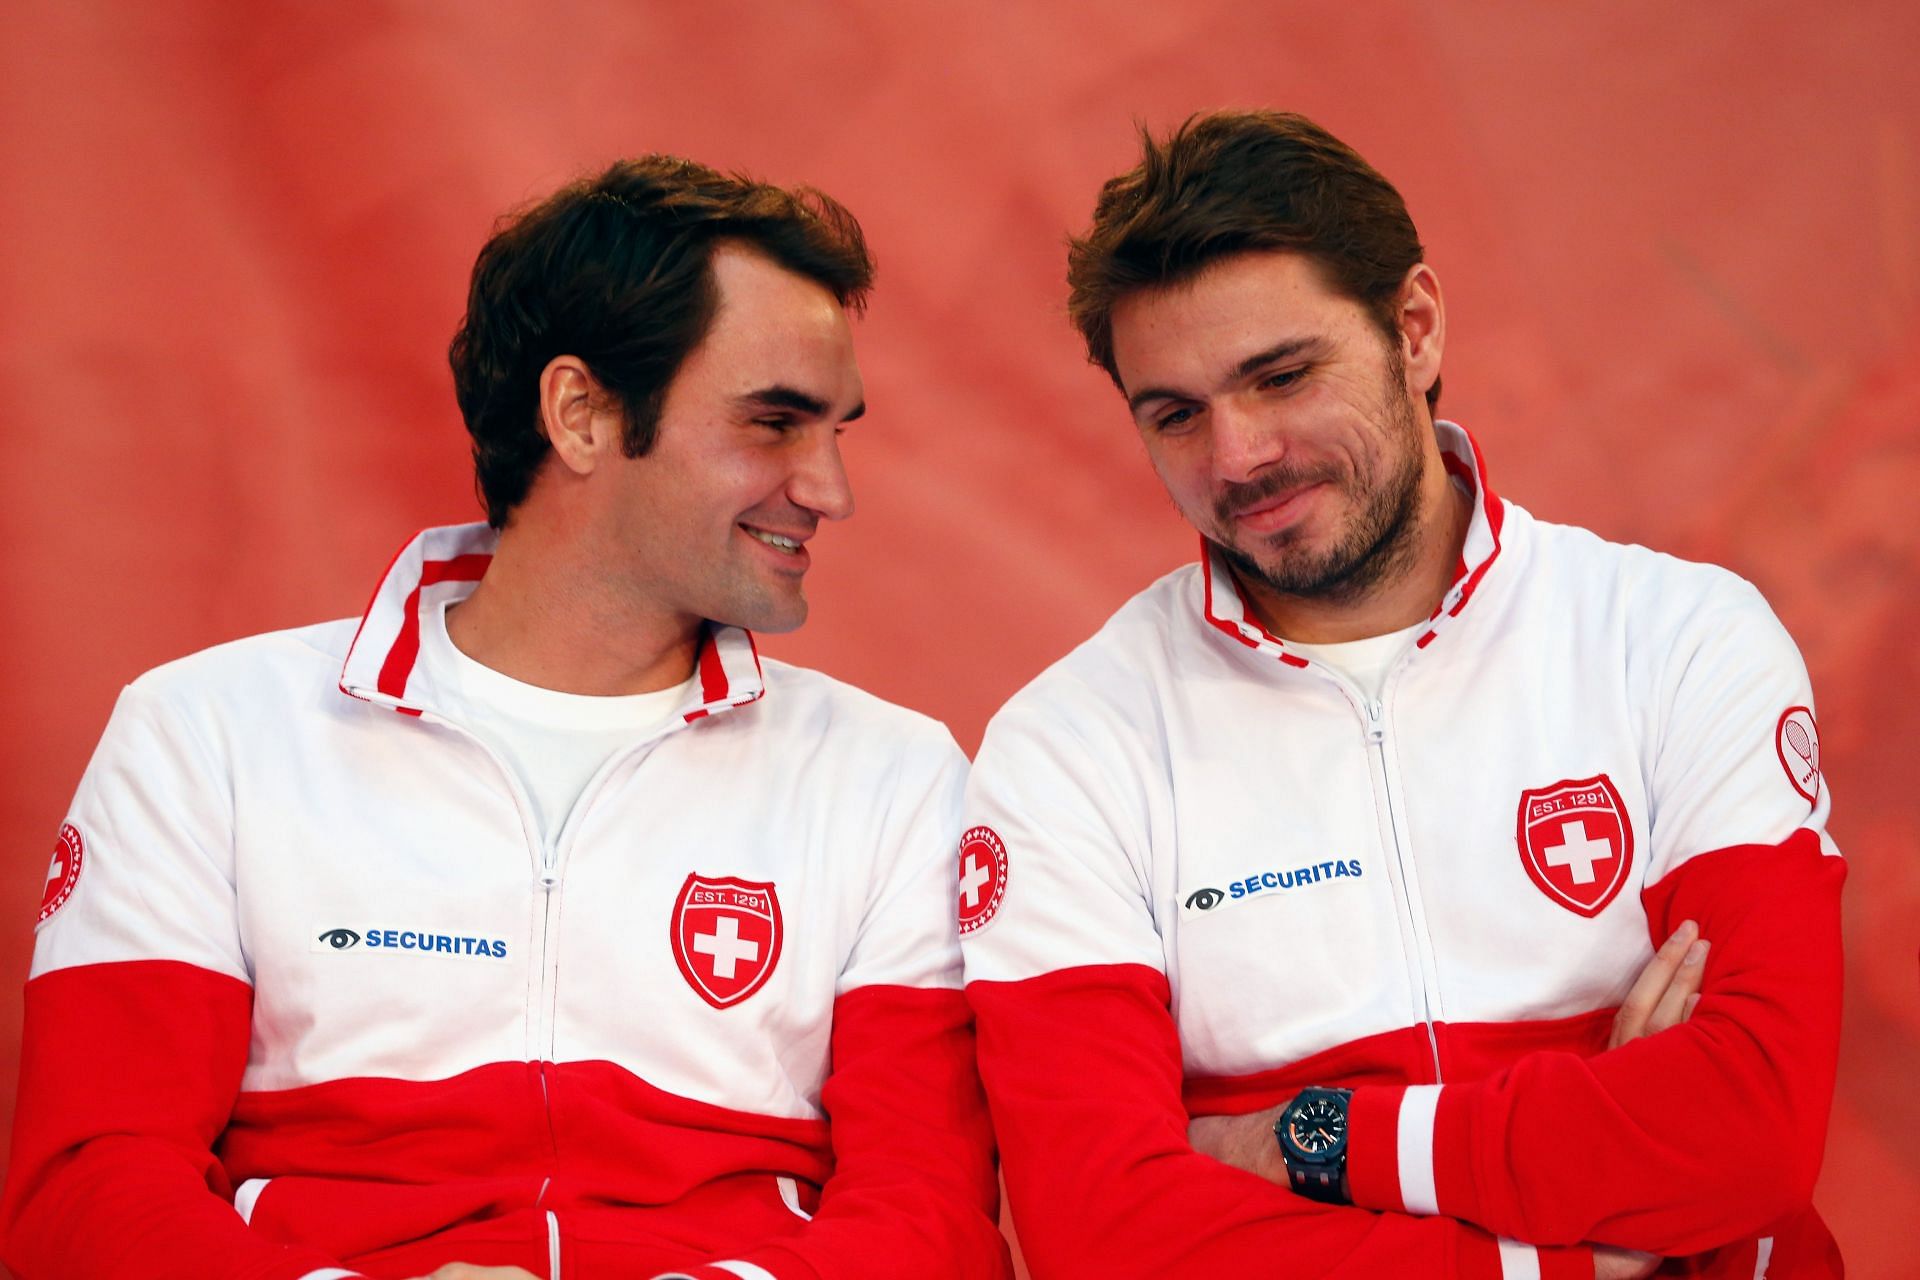 Federer (left) and Wawrinka